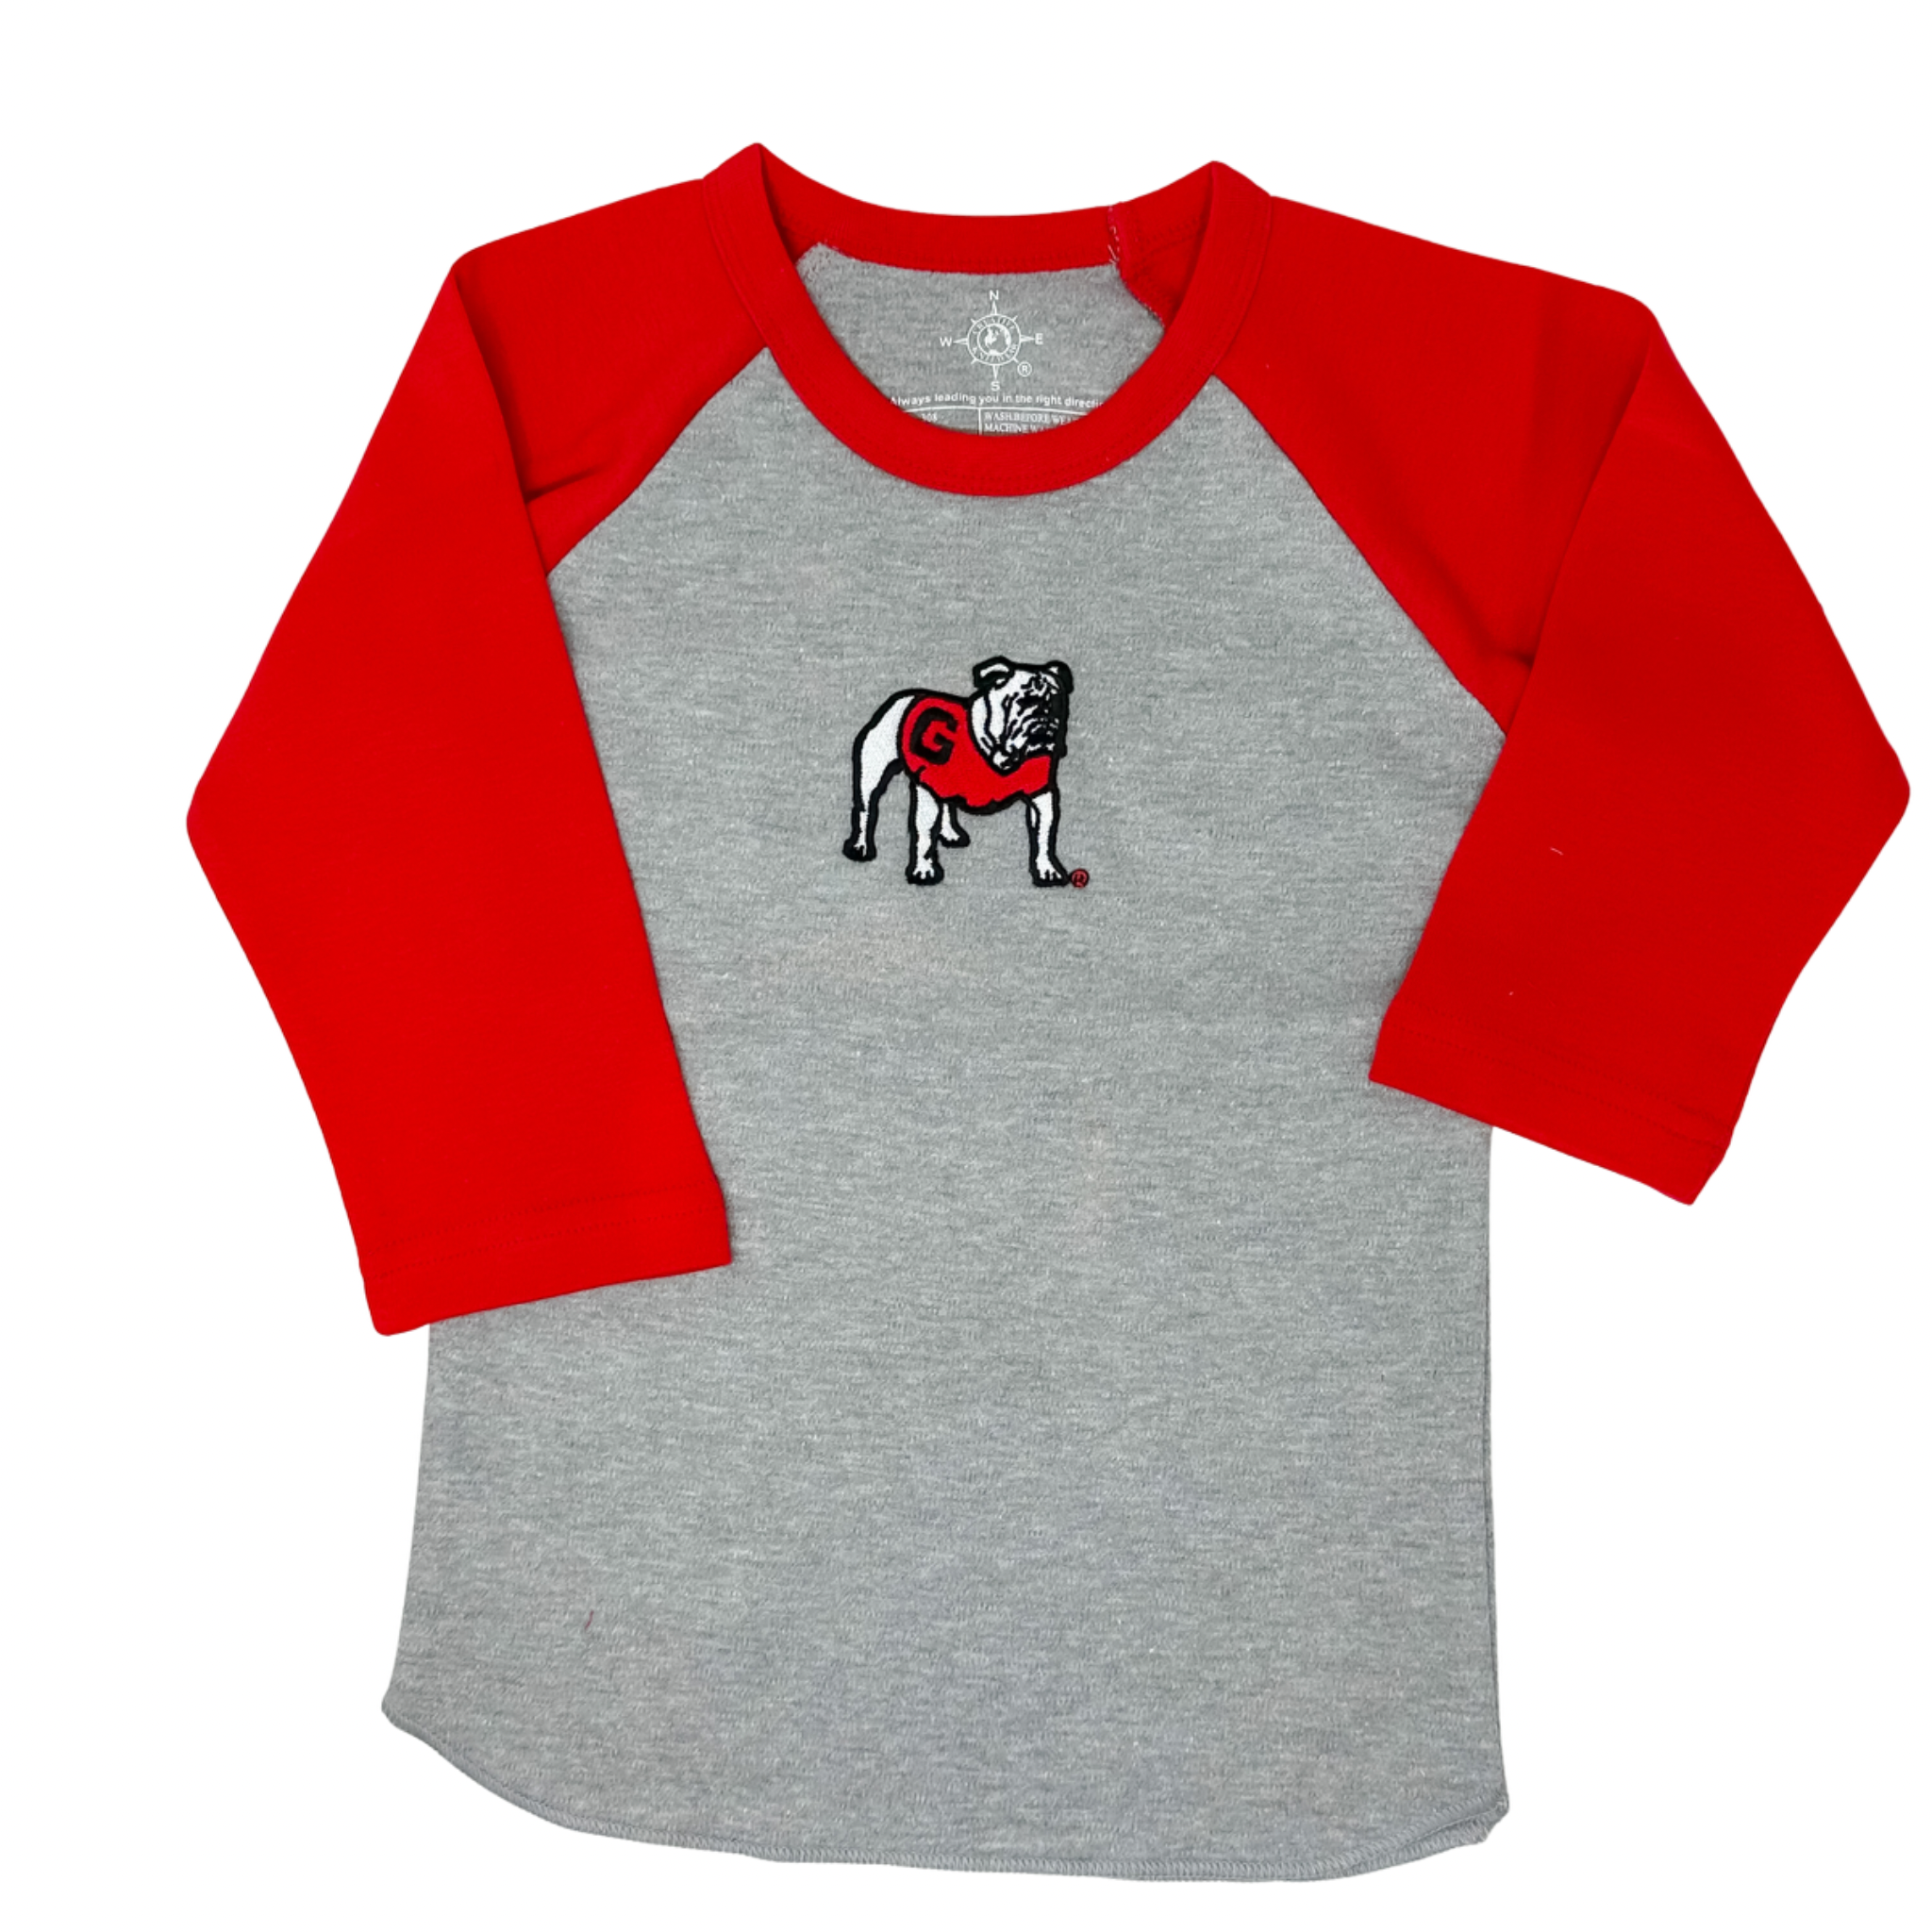 Creative Knitwear - Baseball Shirt - UGA Red